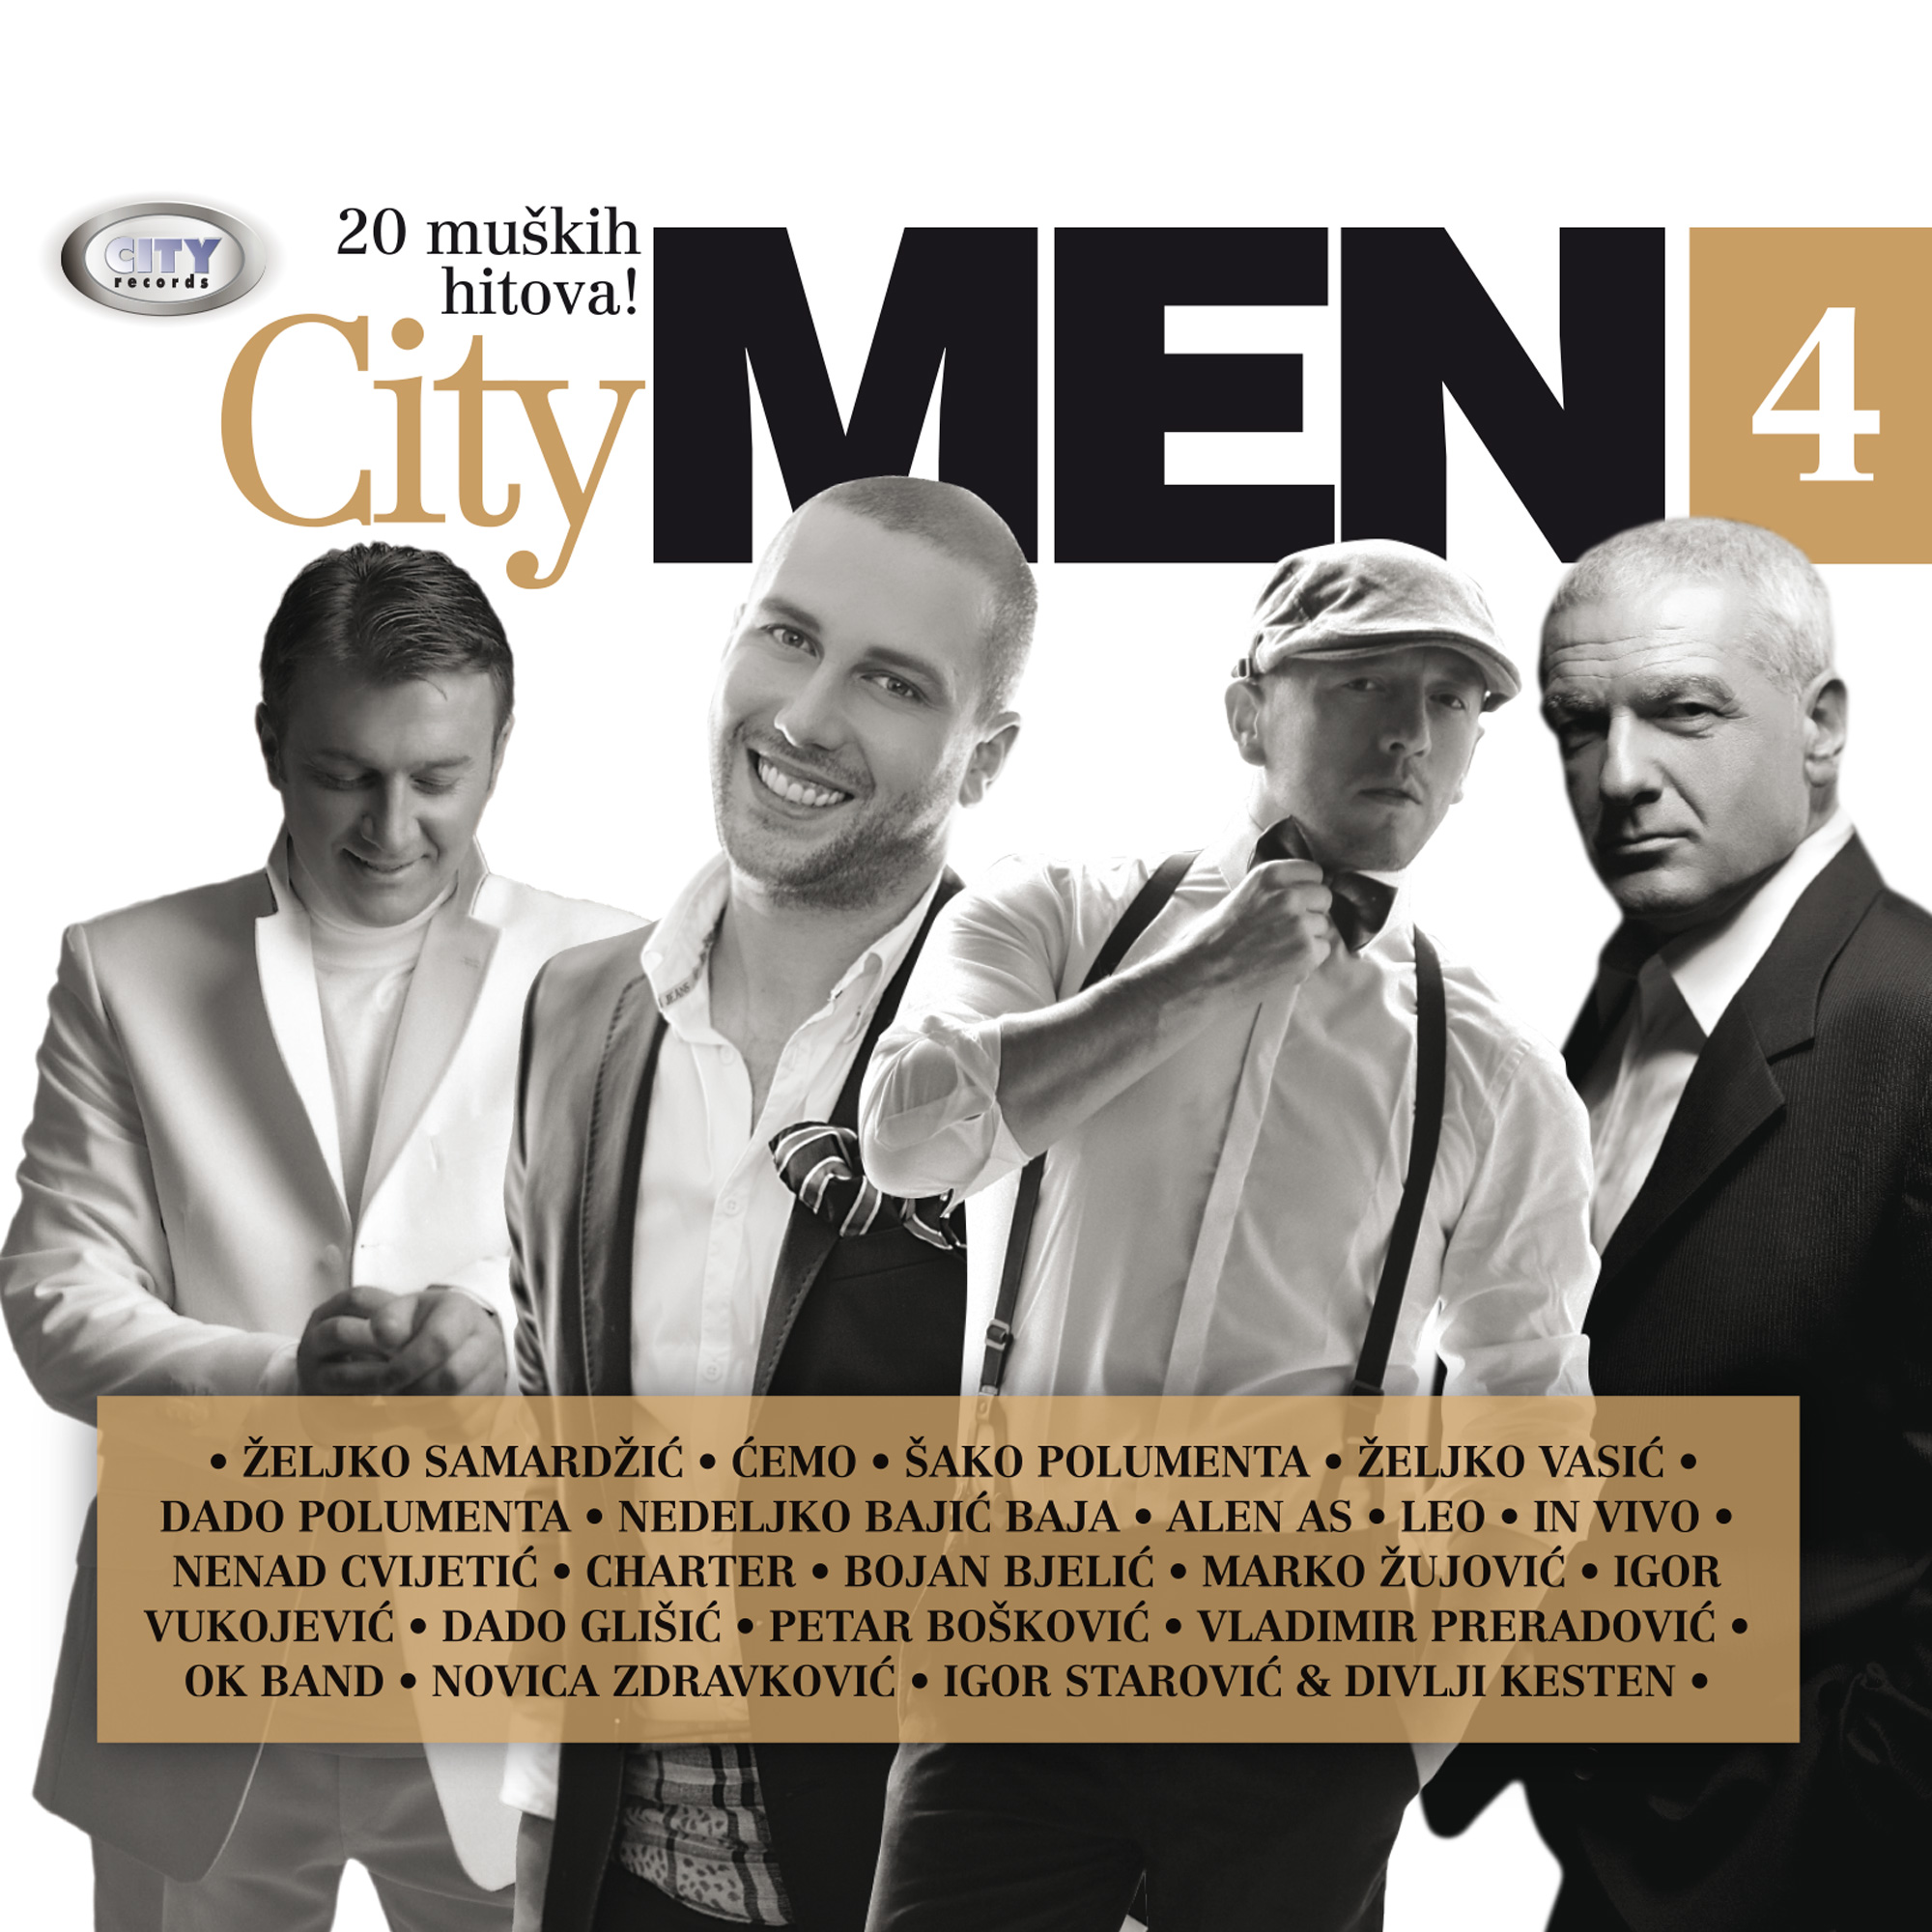 City Men 4